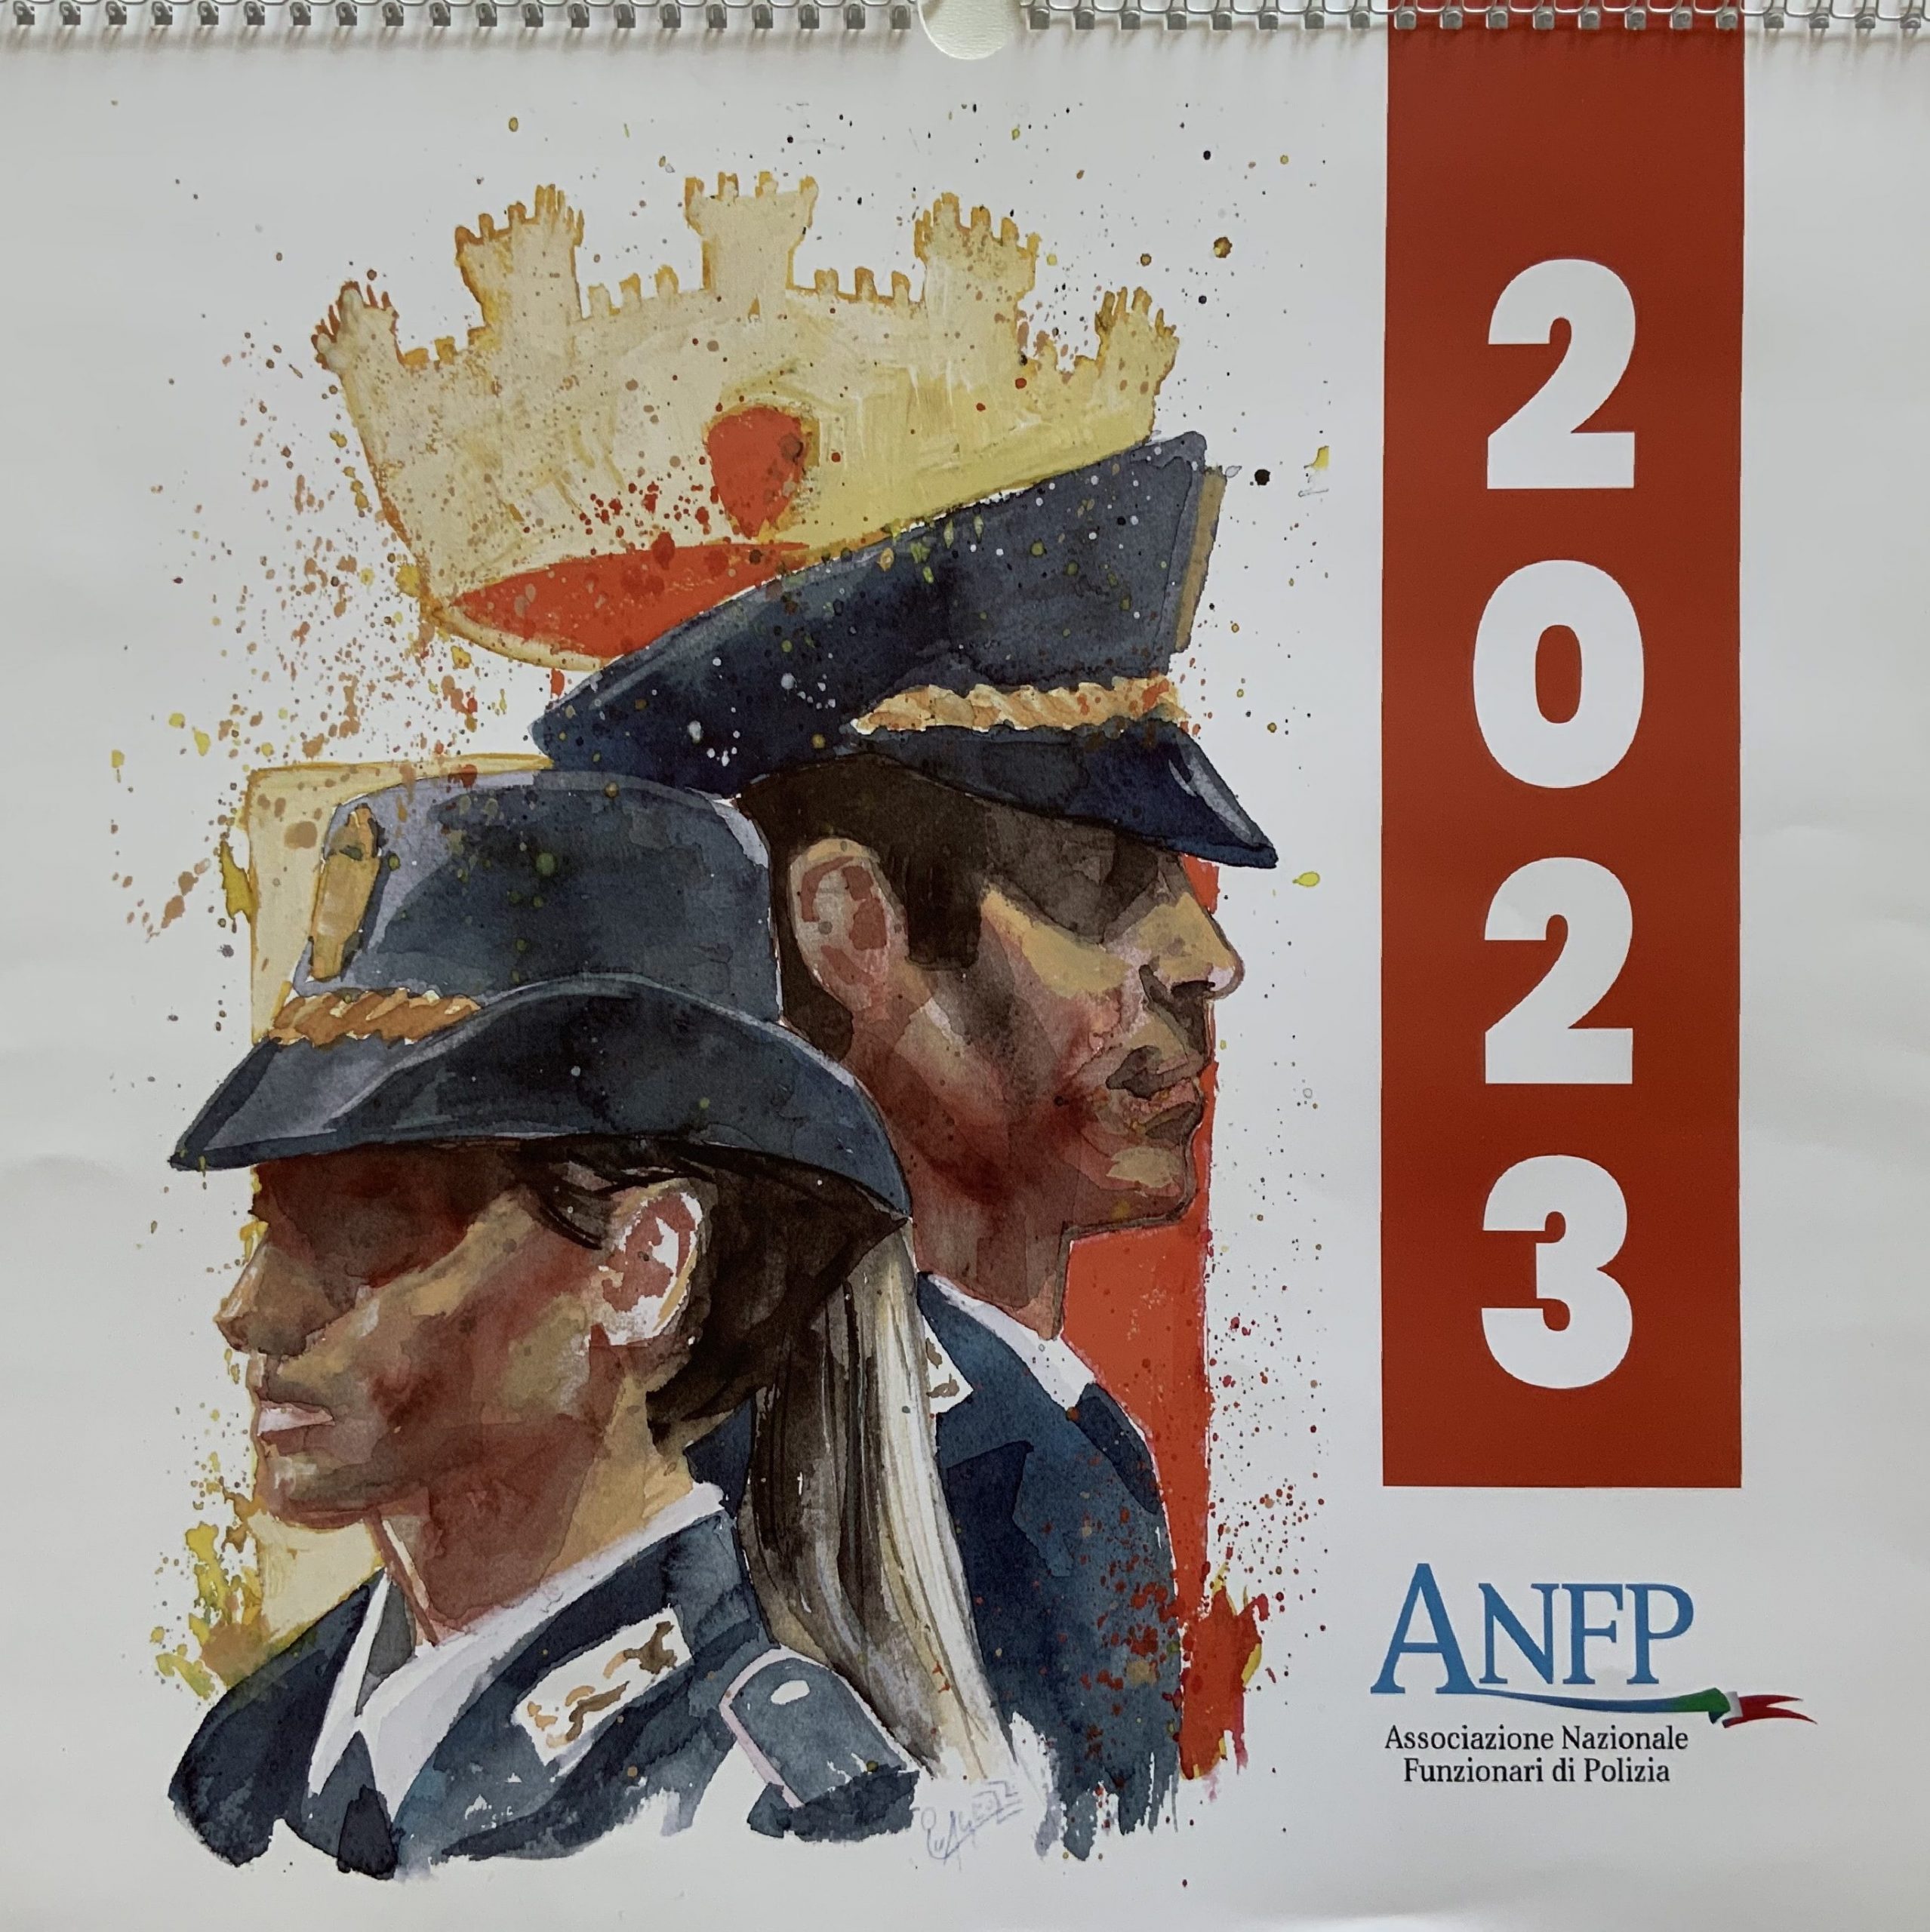 Cristiano Quagliozzi. Calendario dell'ANFP 2023